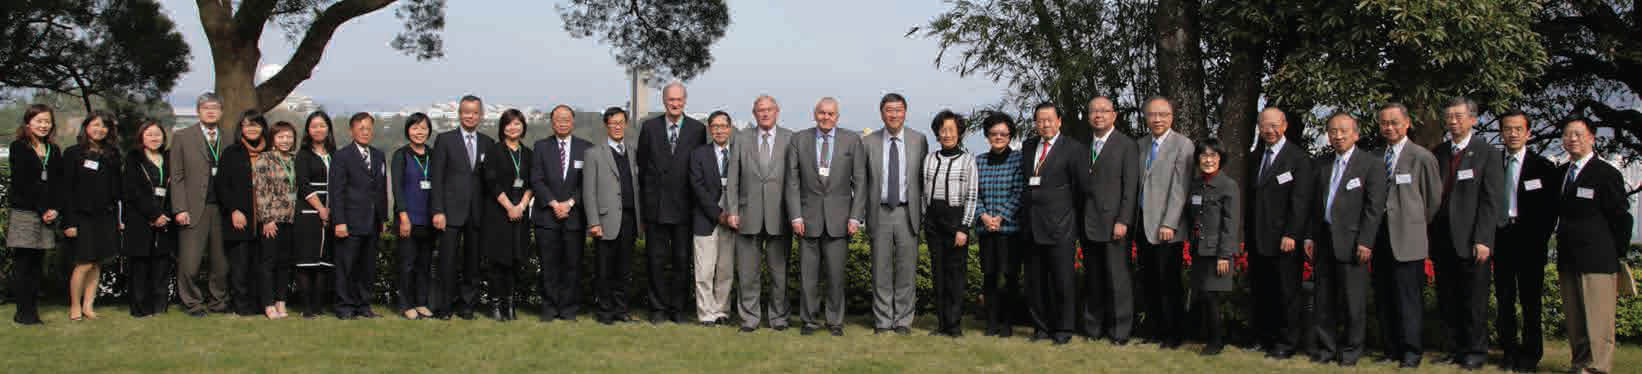 UGC members' visit to CUHK in 2012